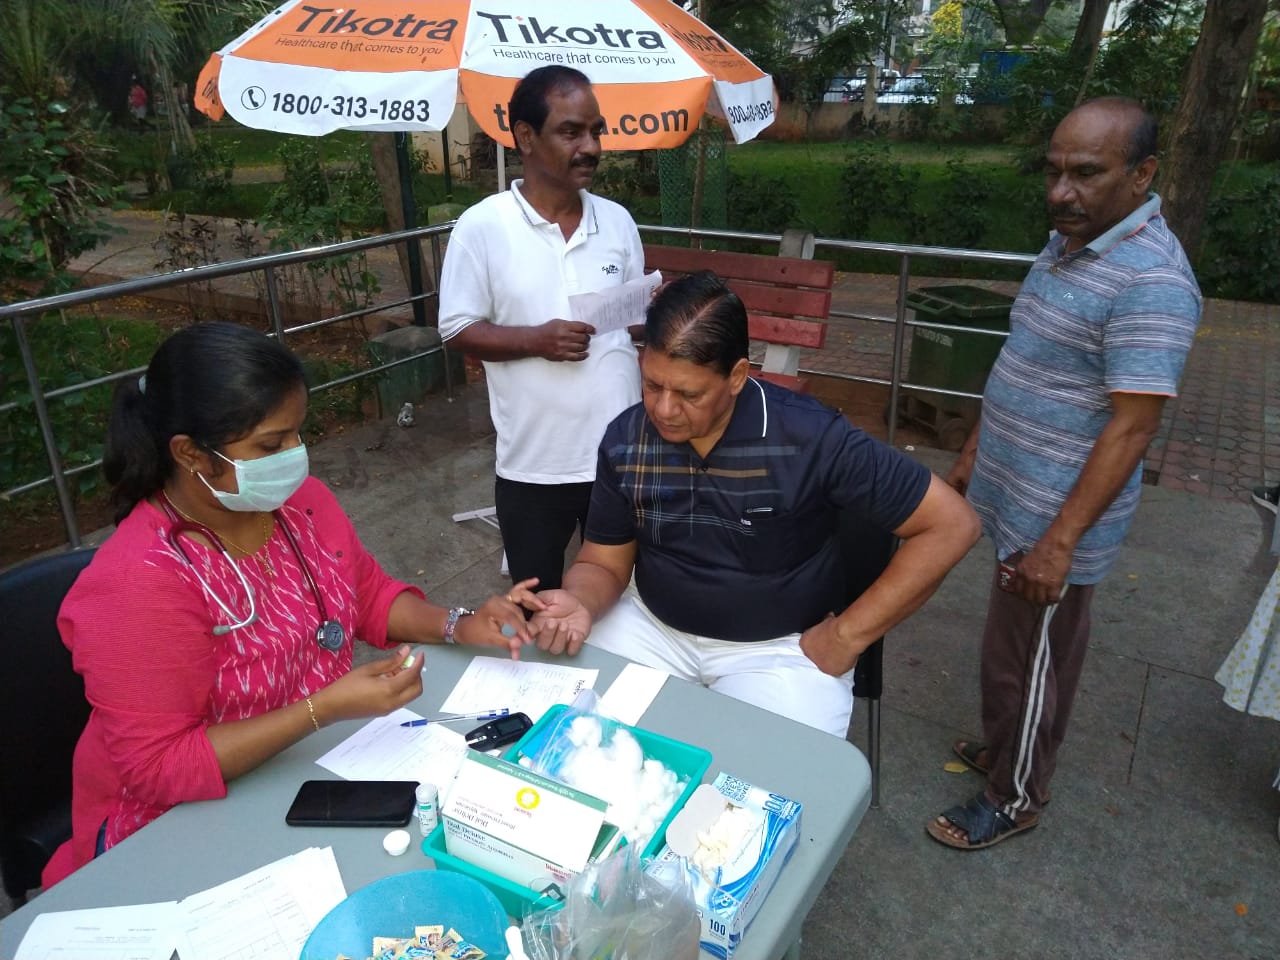 Tikotra's MBBS Doctor checking vitals at a medical camp in Anna Nagar Park, Chennai India